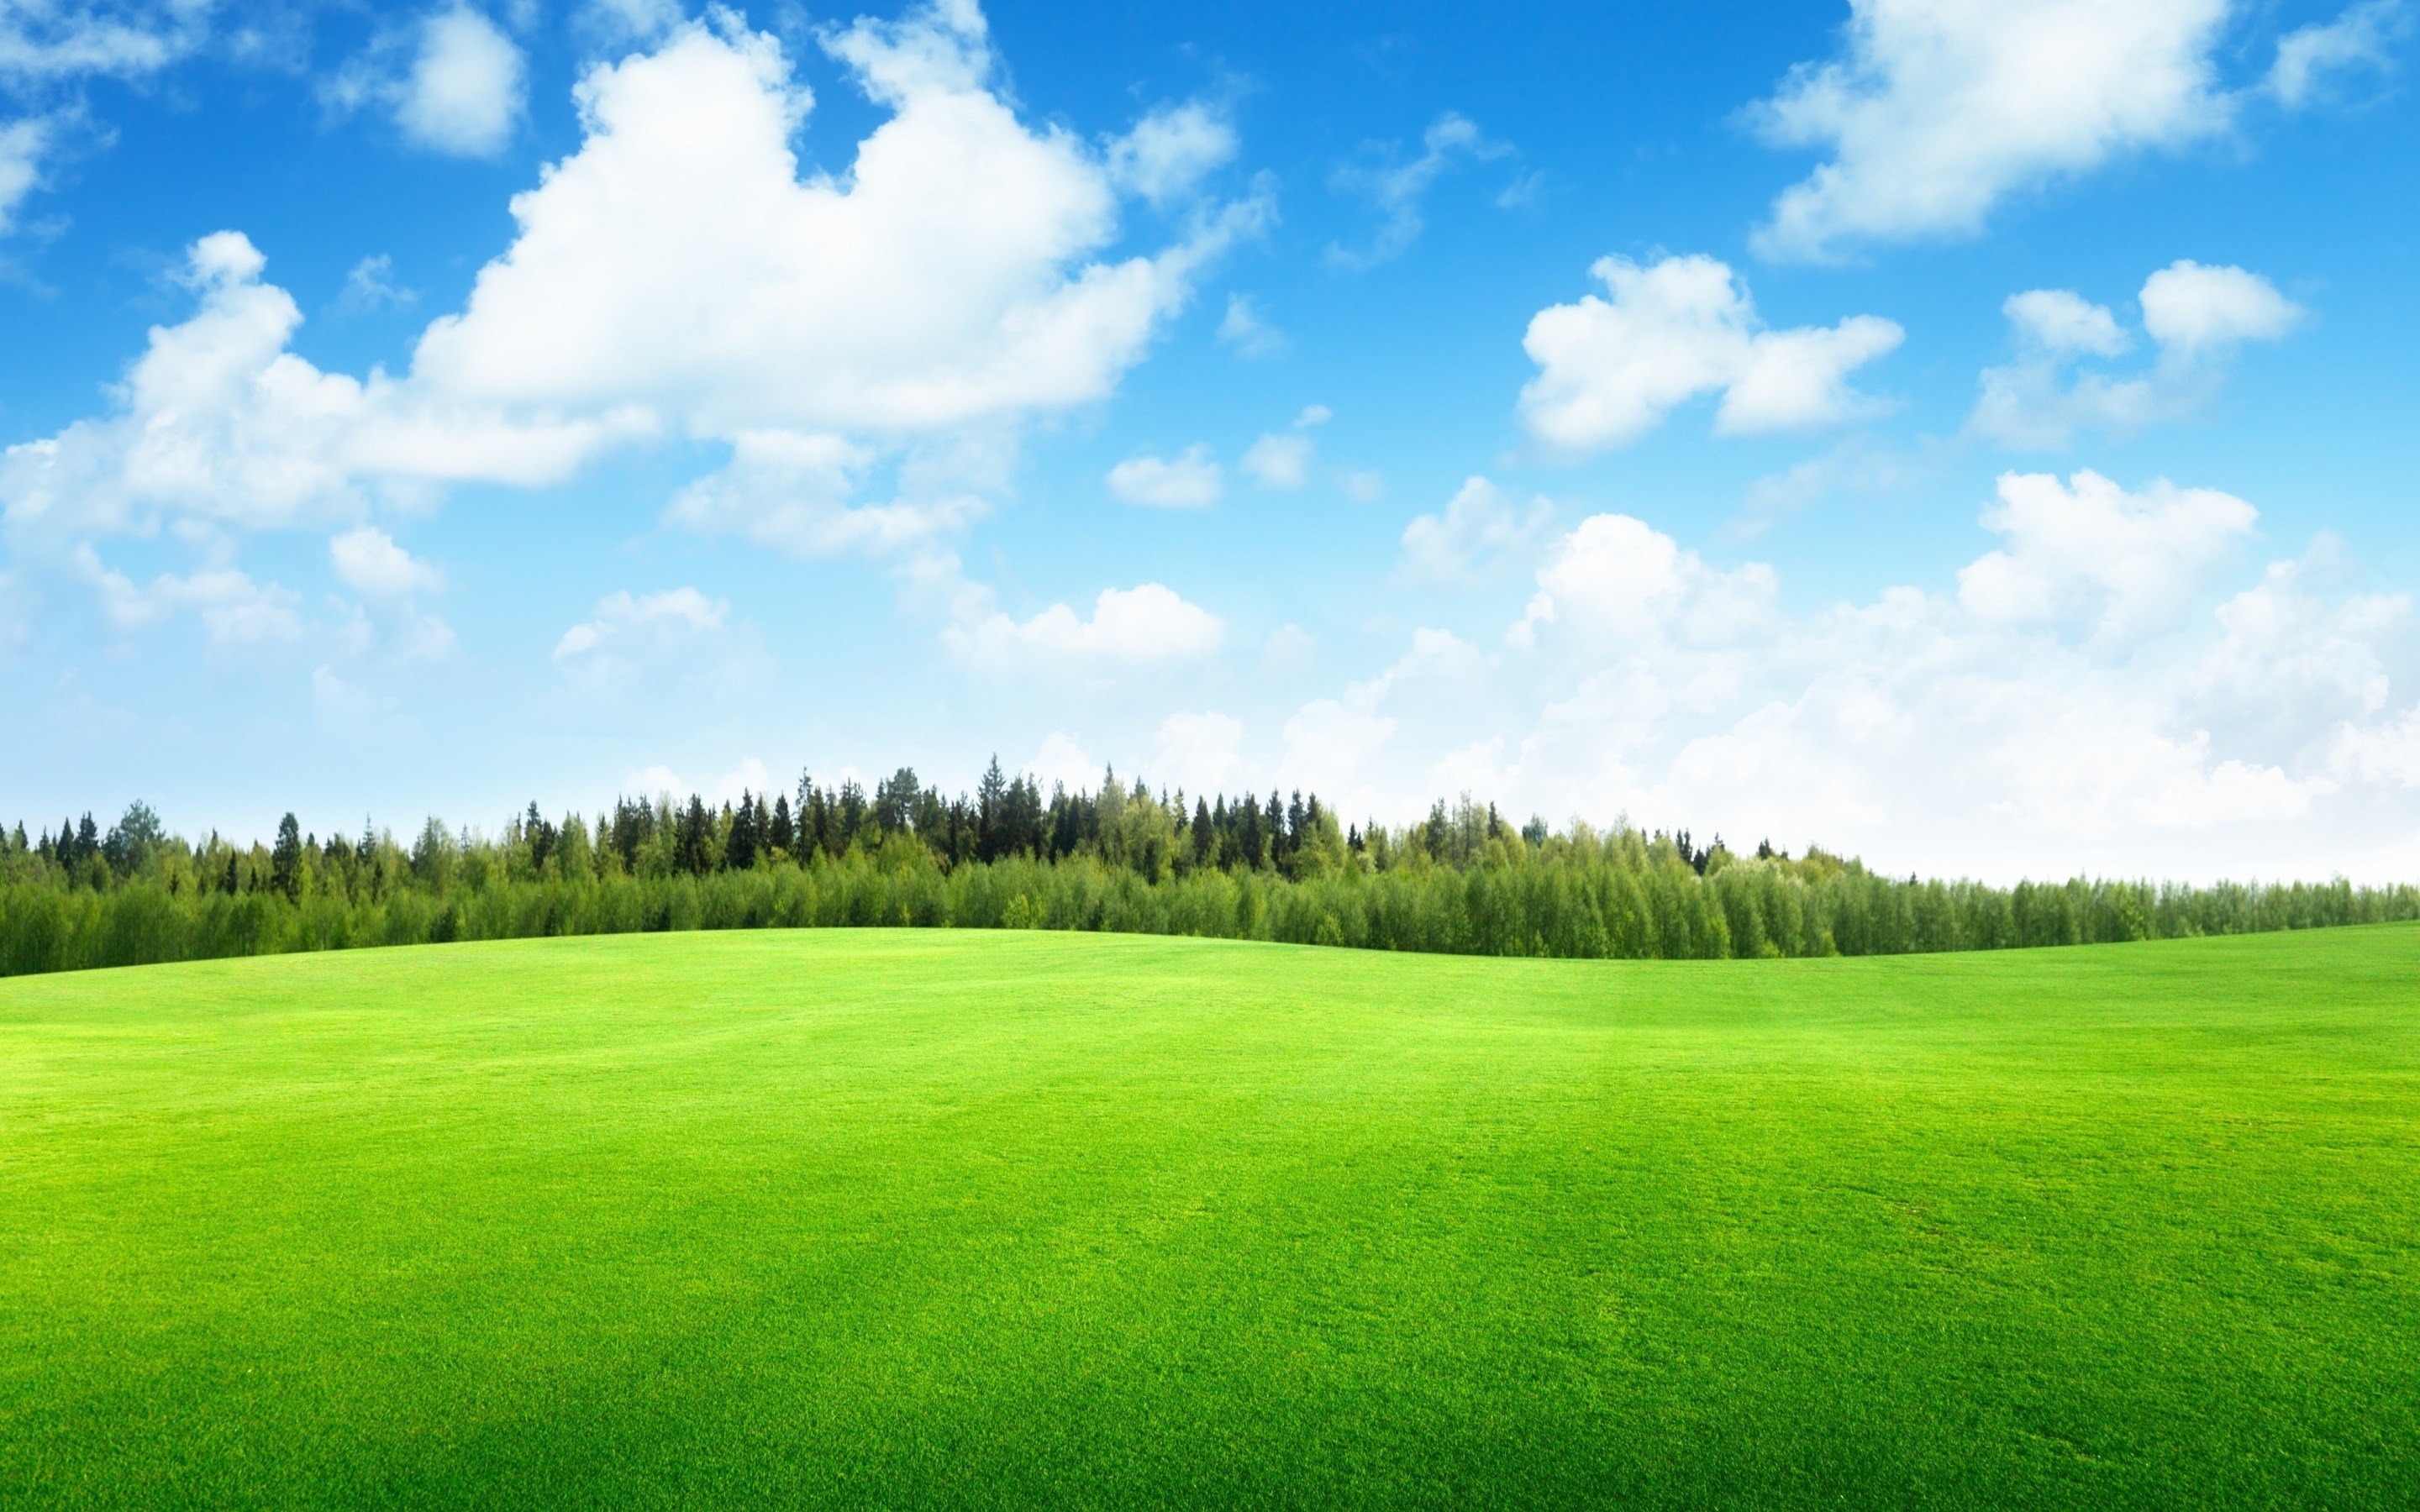 Beaufitul Green Grass Field for 2880 x 1800 Retina Display resolution